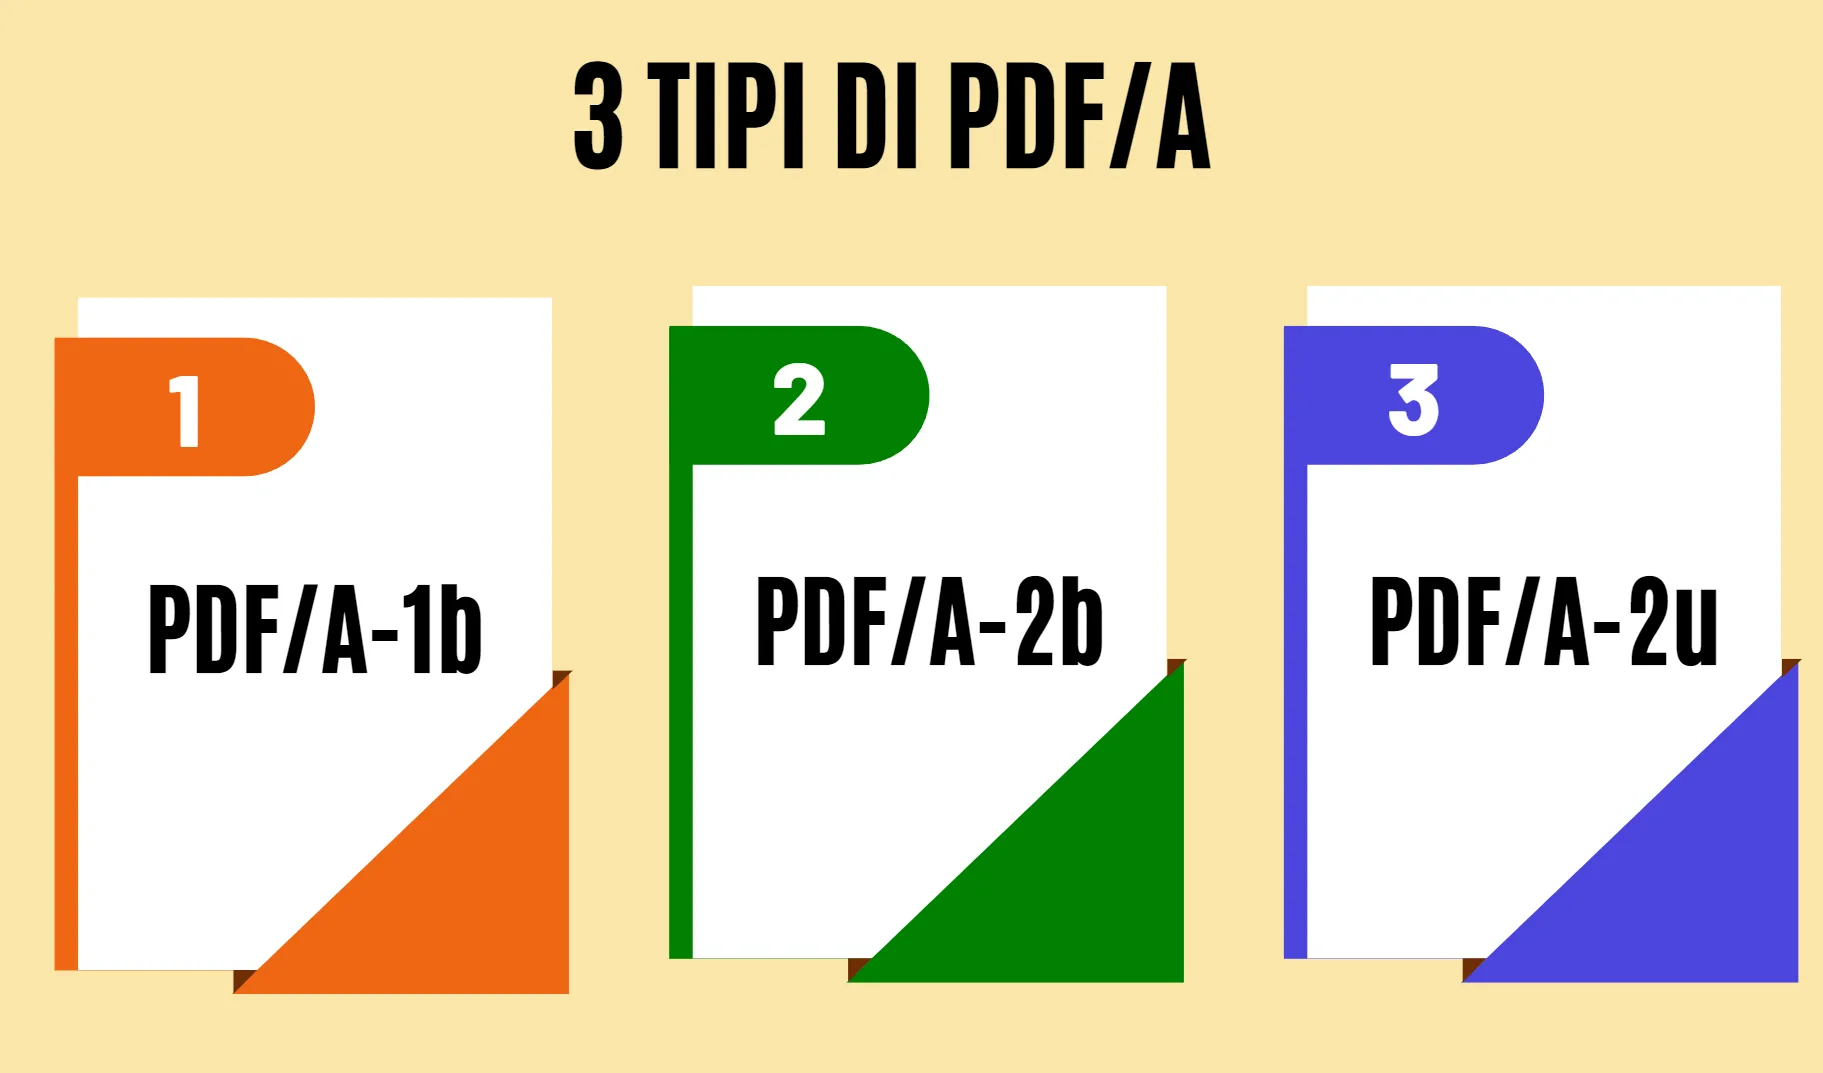 3 Tipi di PDF/A